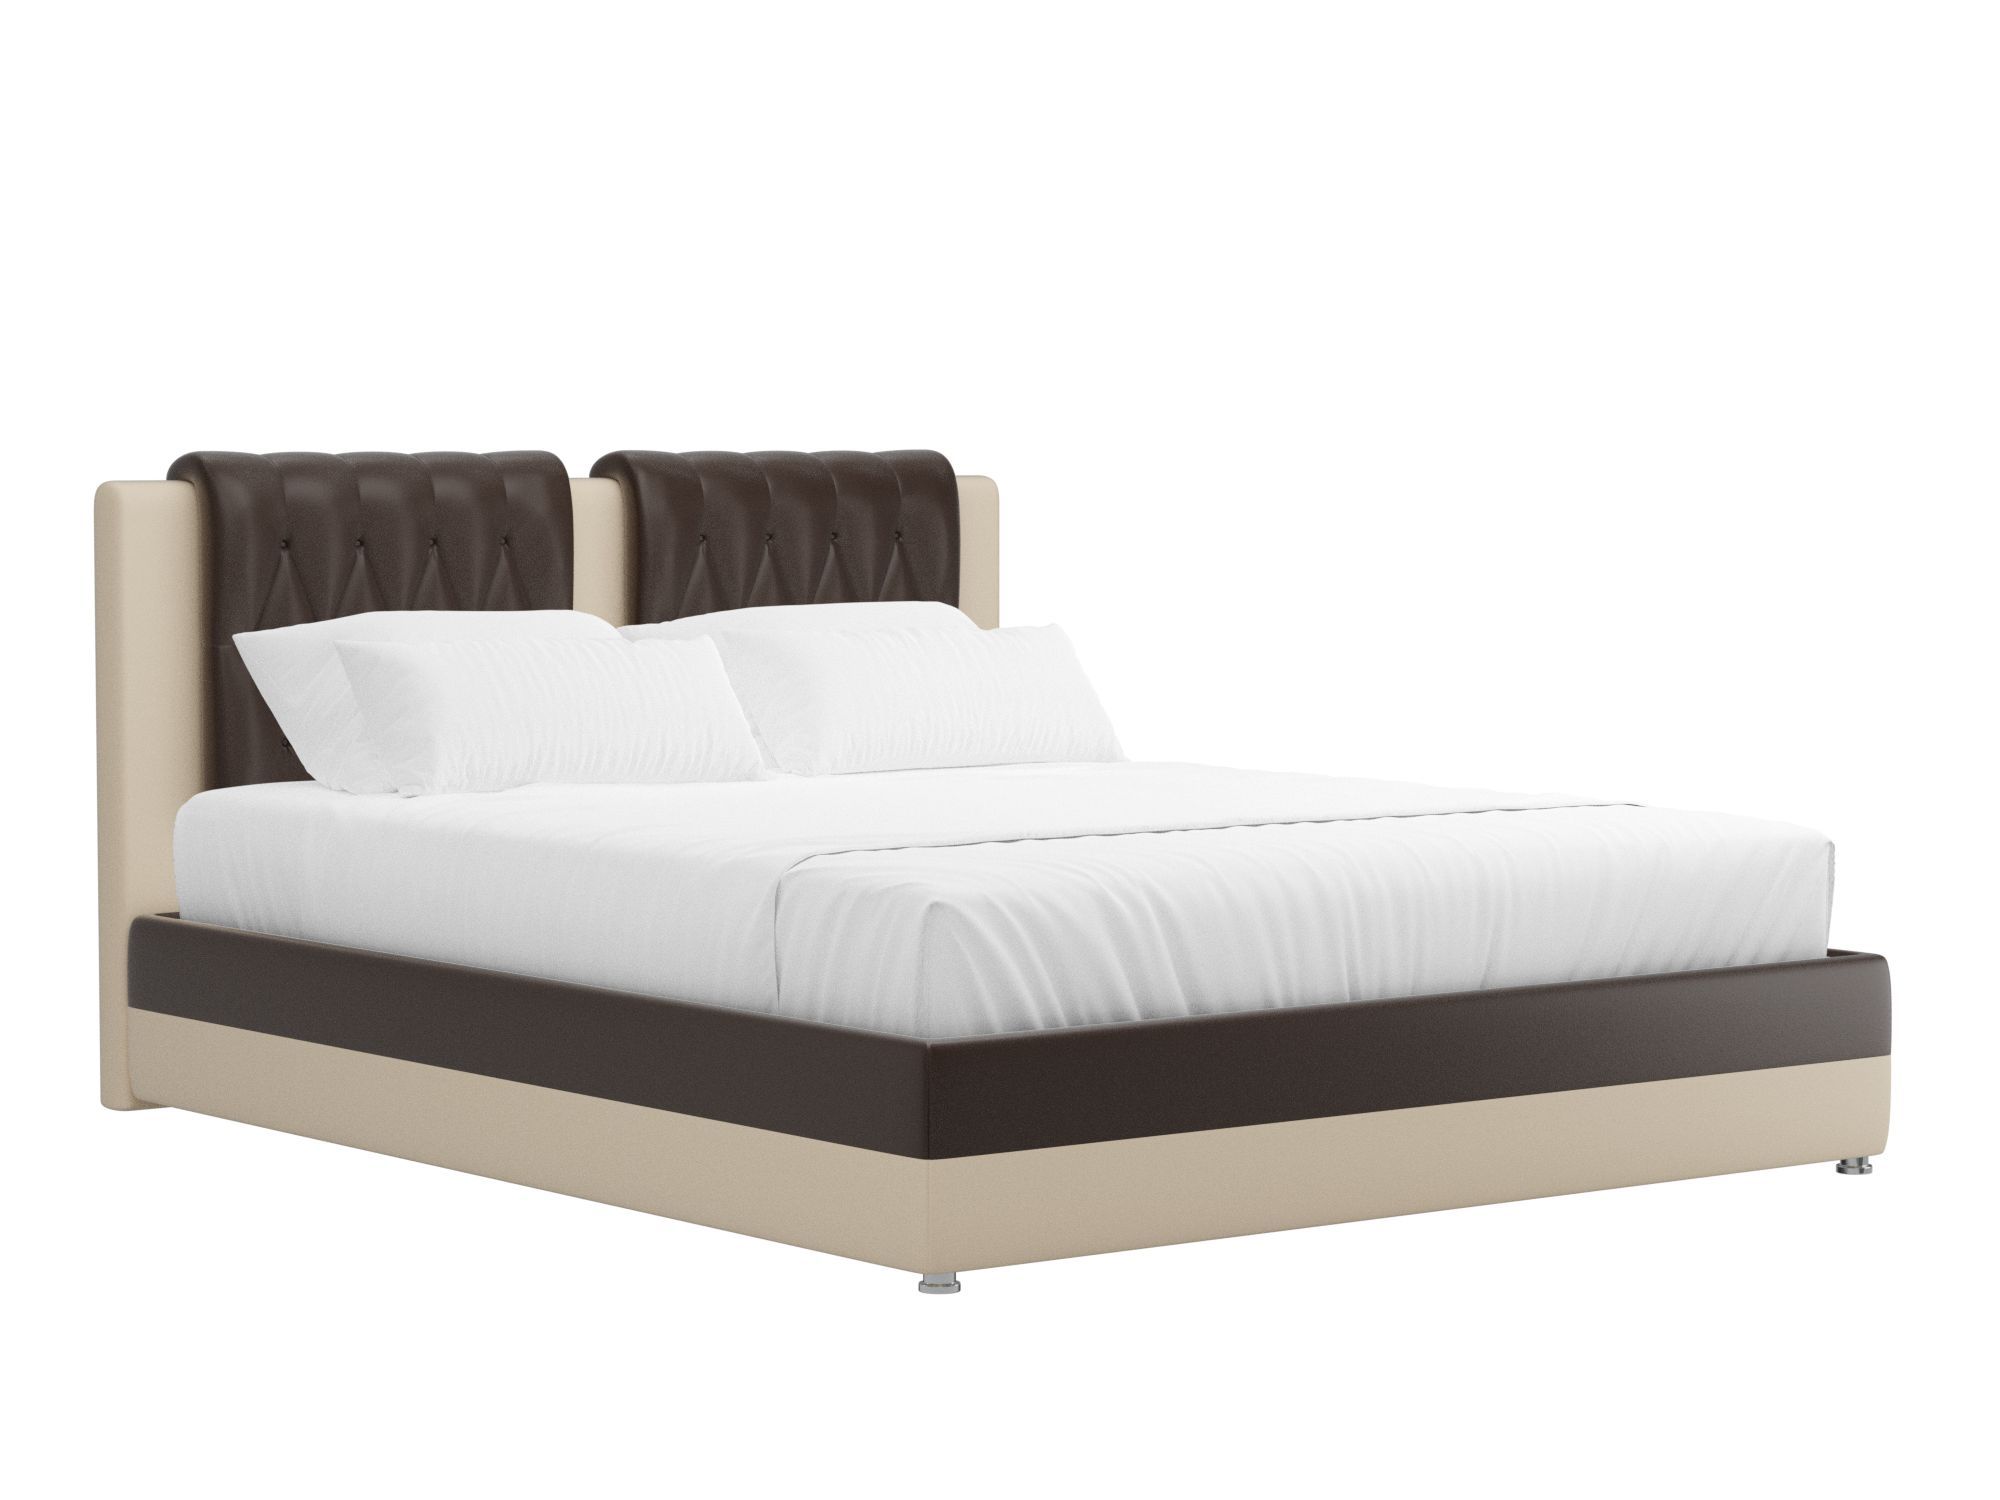 кровать камилла 160x200 коричневый бежевый лдсп Кровать Камилла (160x200) Коричневый, Бежевый, ЛДСП